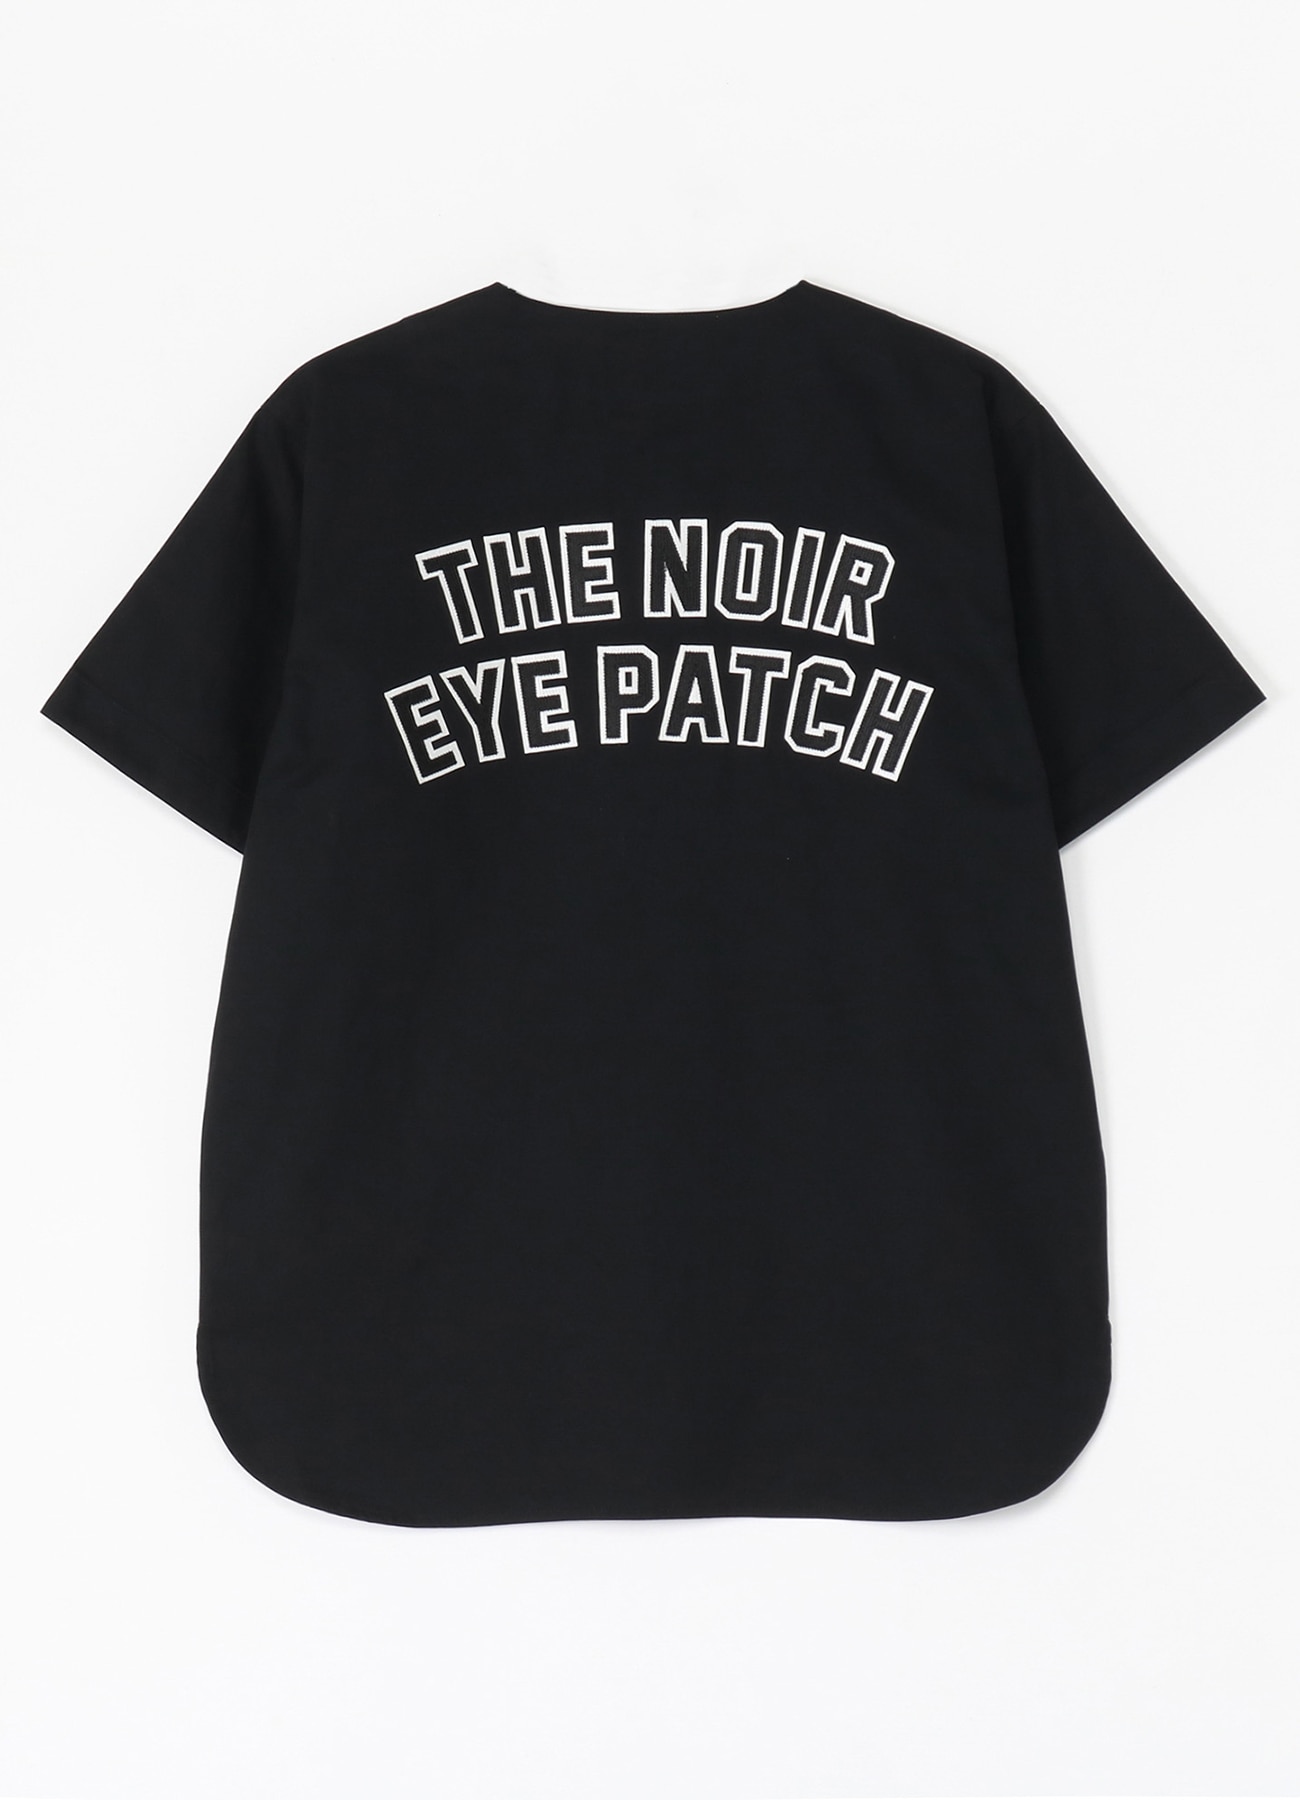 Blackeyepatch ベースボールシャツ-